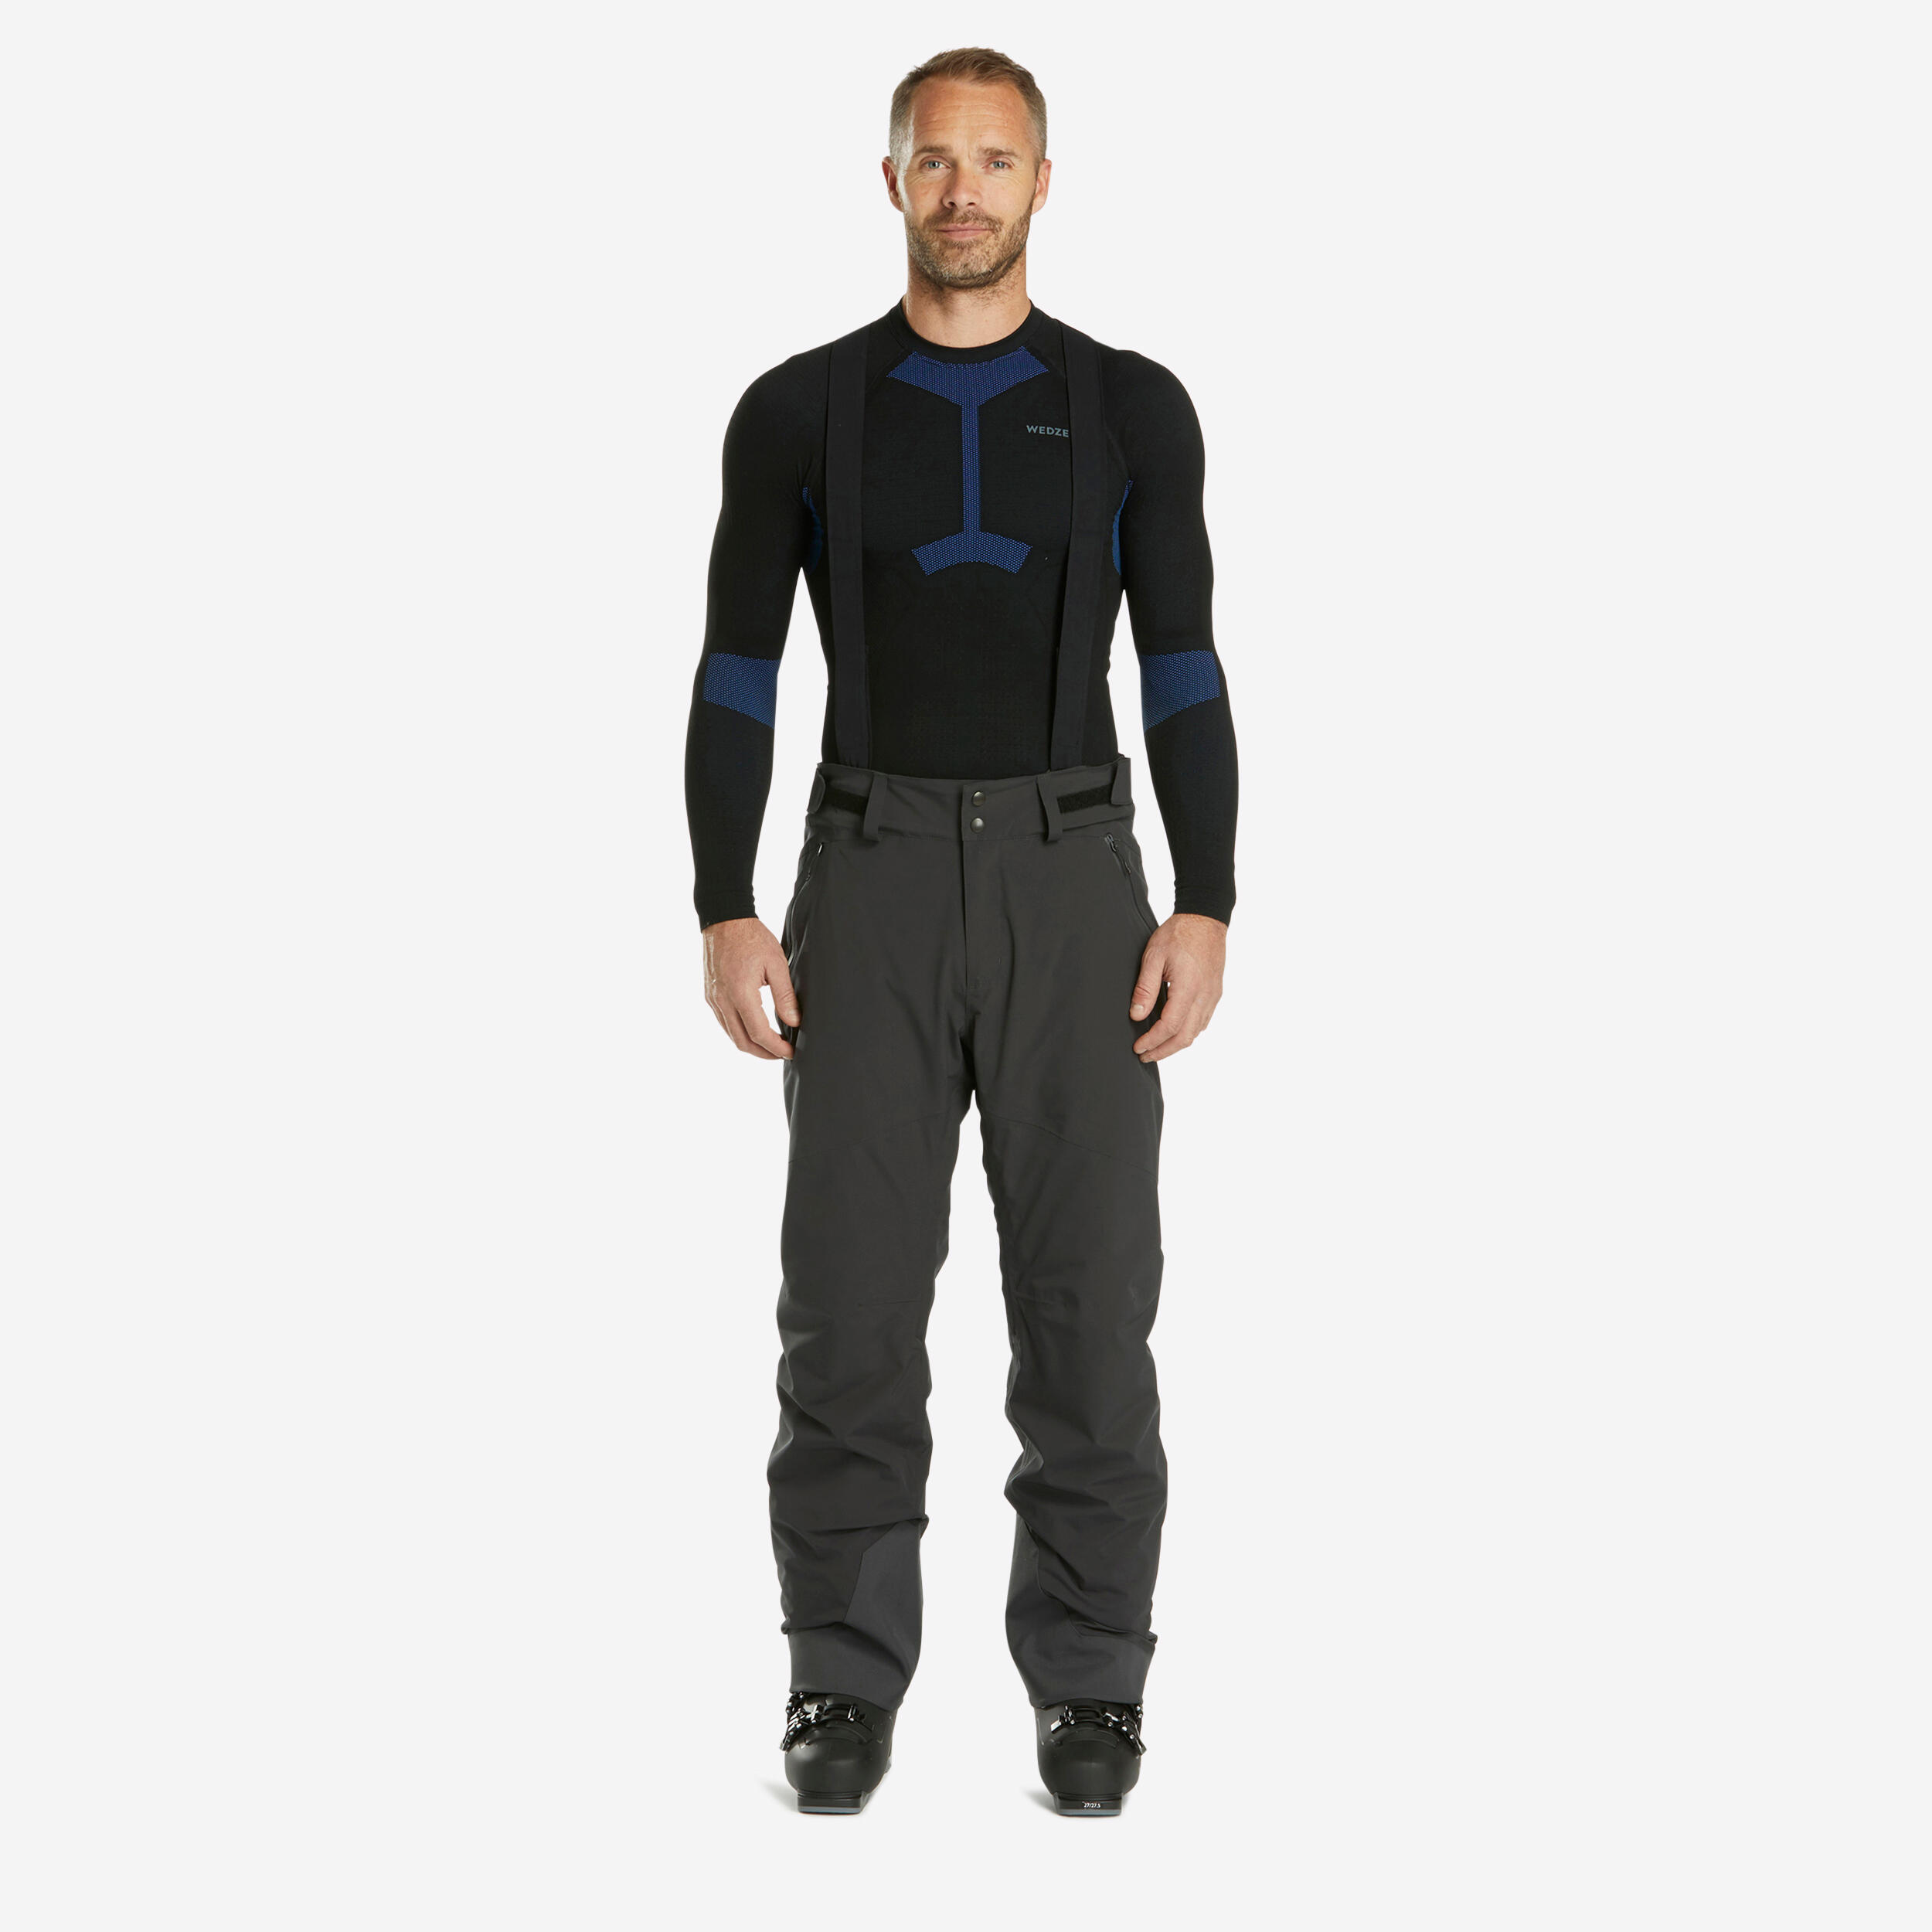 pantalon de ski chaud homme - 580 - gris foncé - wedze